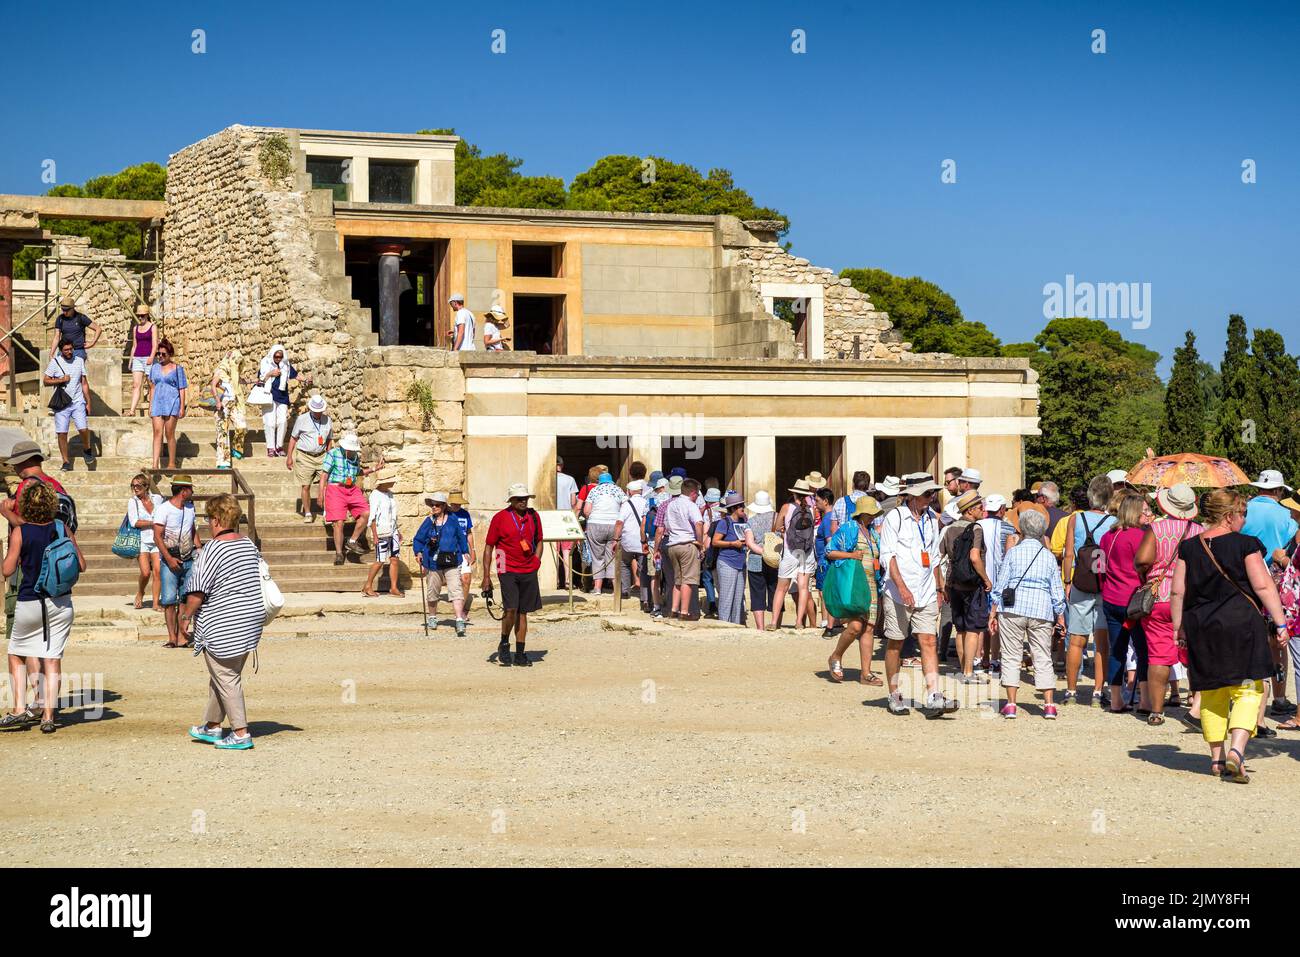 KNOSSOS, GRIECHENLAND - 18. SEPTEMBER: Besucher warten am 2017. September in Folge auf die größte bronzezeitliche archäologische Stätte auf der Insel Kreta - den Palast Knossos Stockfoto